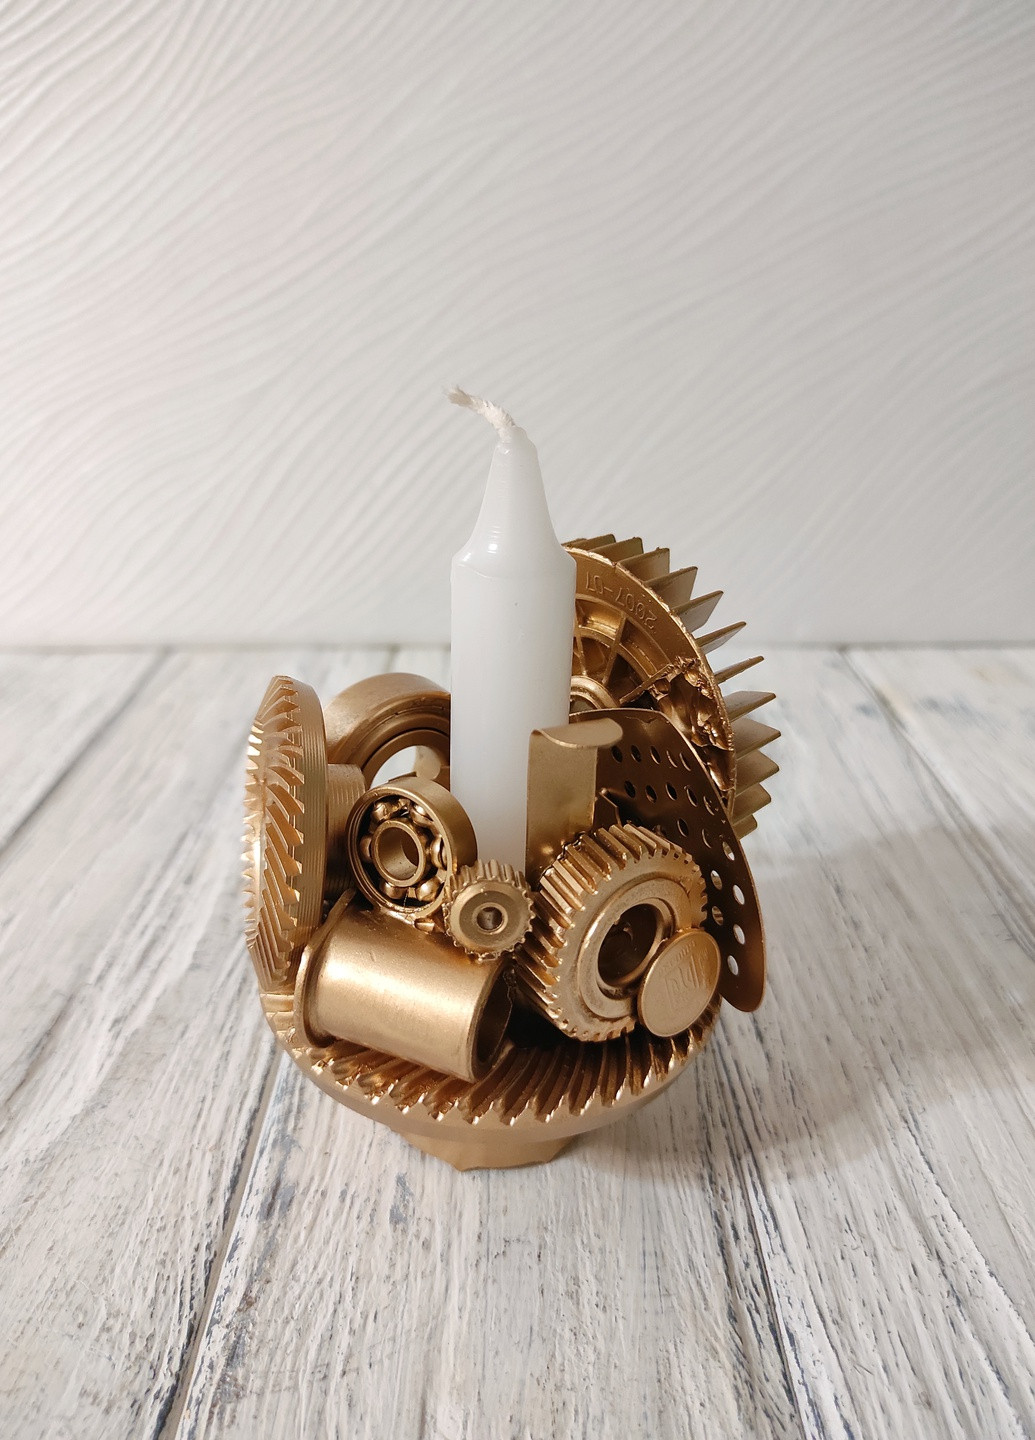 Сувенір підсвічник свічник стімпанк з металу з золотим напиленням ручна робота хендмейд подарунок SuvenirPodarokZP 35 (257989594)